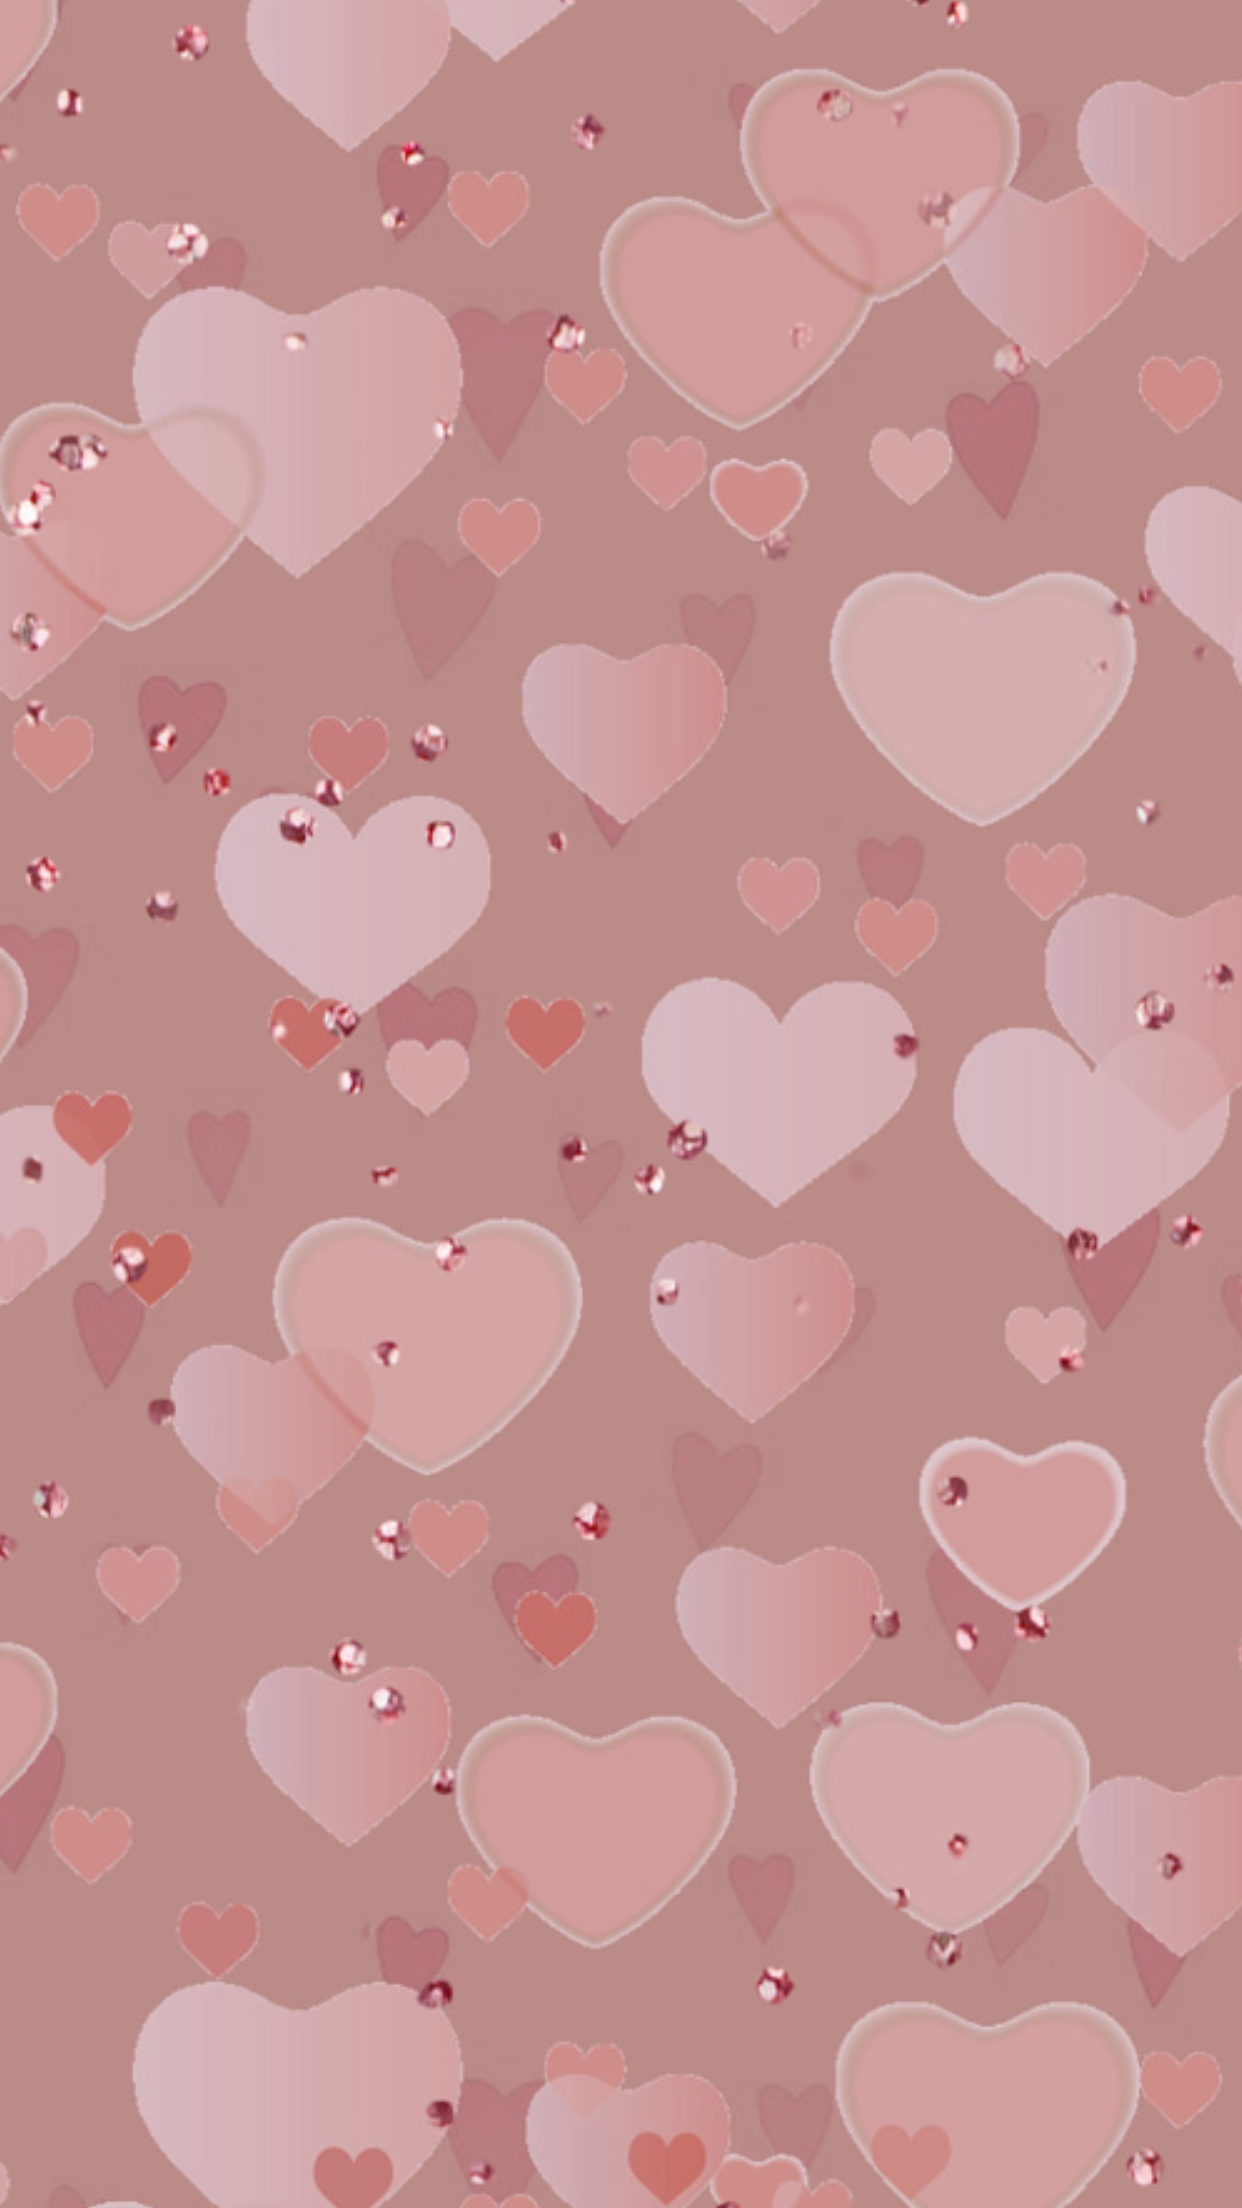 rosa con fondo de pantalla de corazón,corazón,rosado,modelo,diseño,día de san valentín